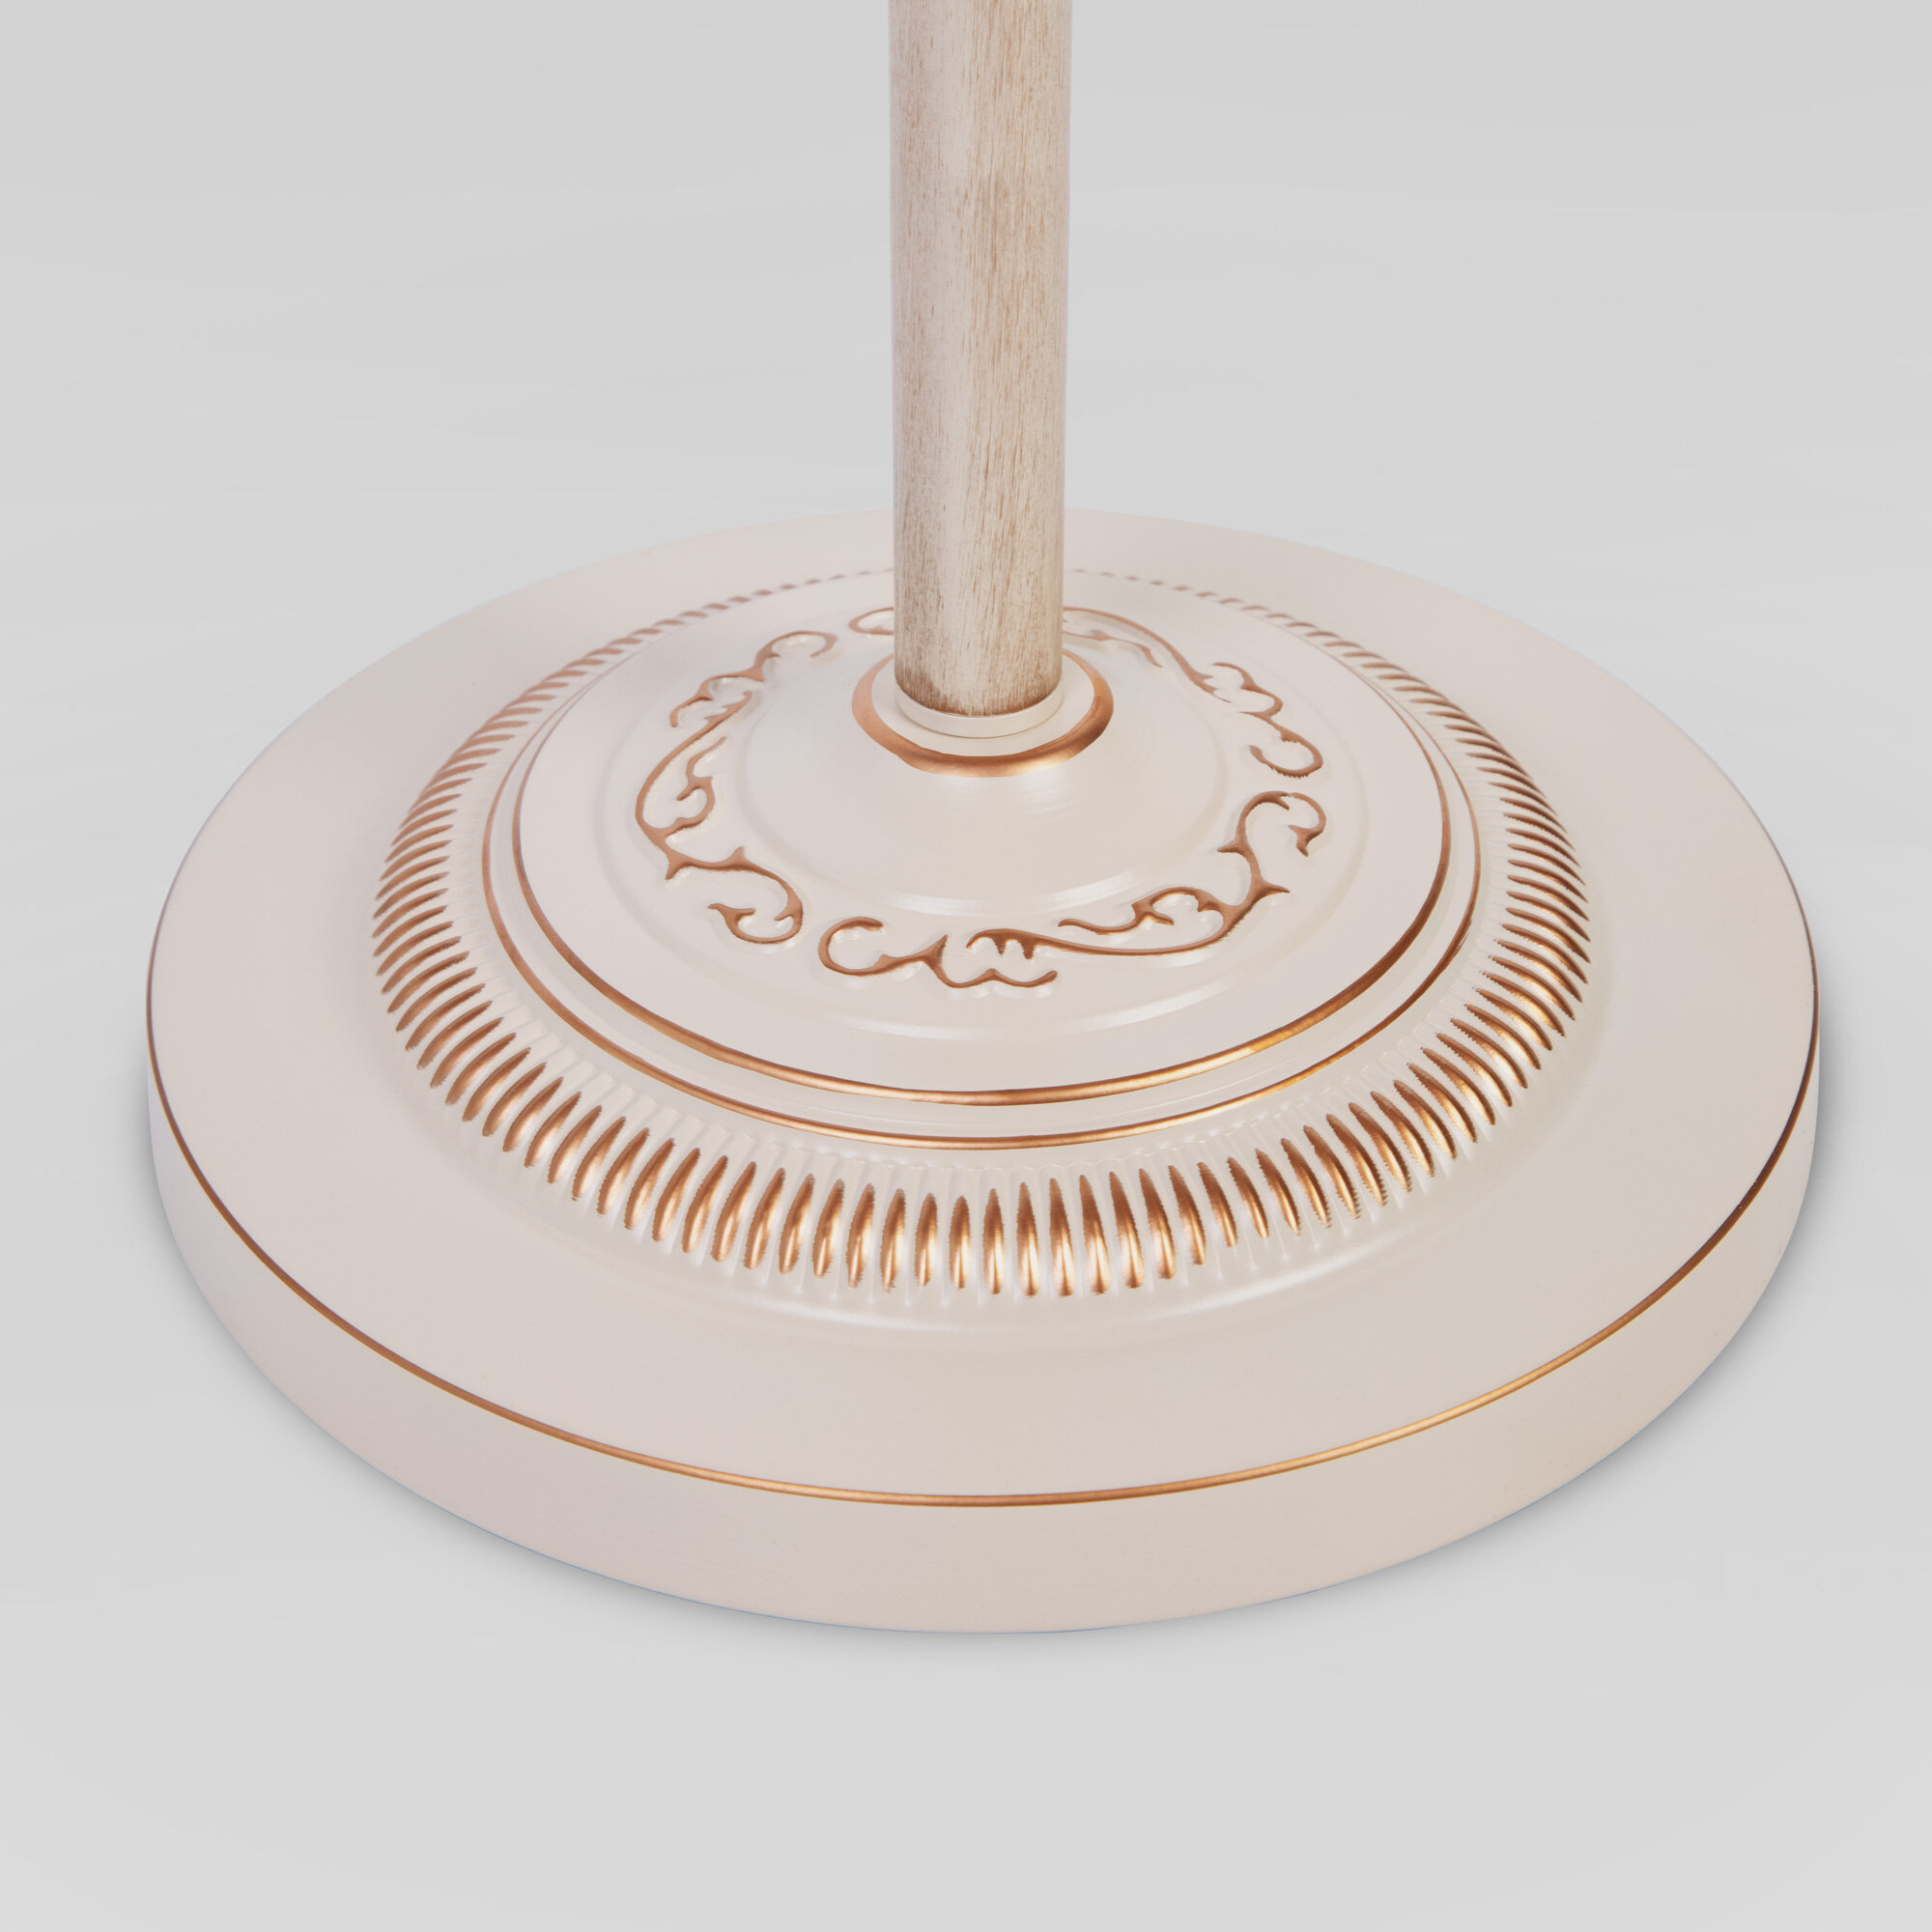 Торшер / Напольный светильник с хрусталем Eurosvet 10073/1 белый с золотом